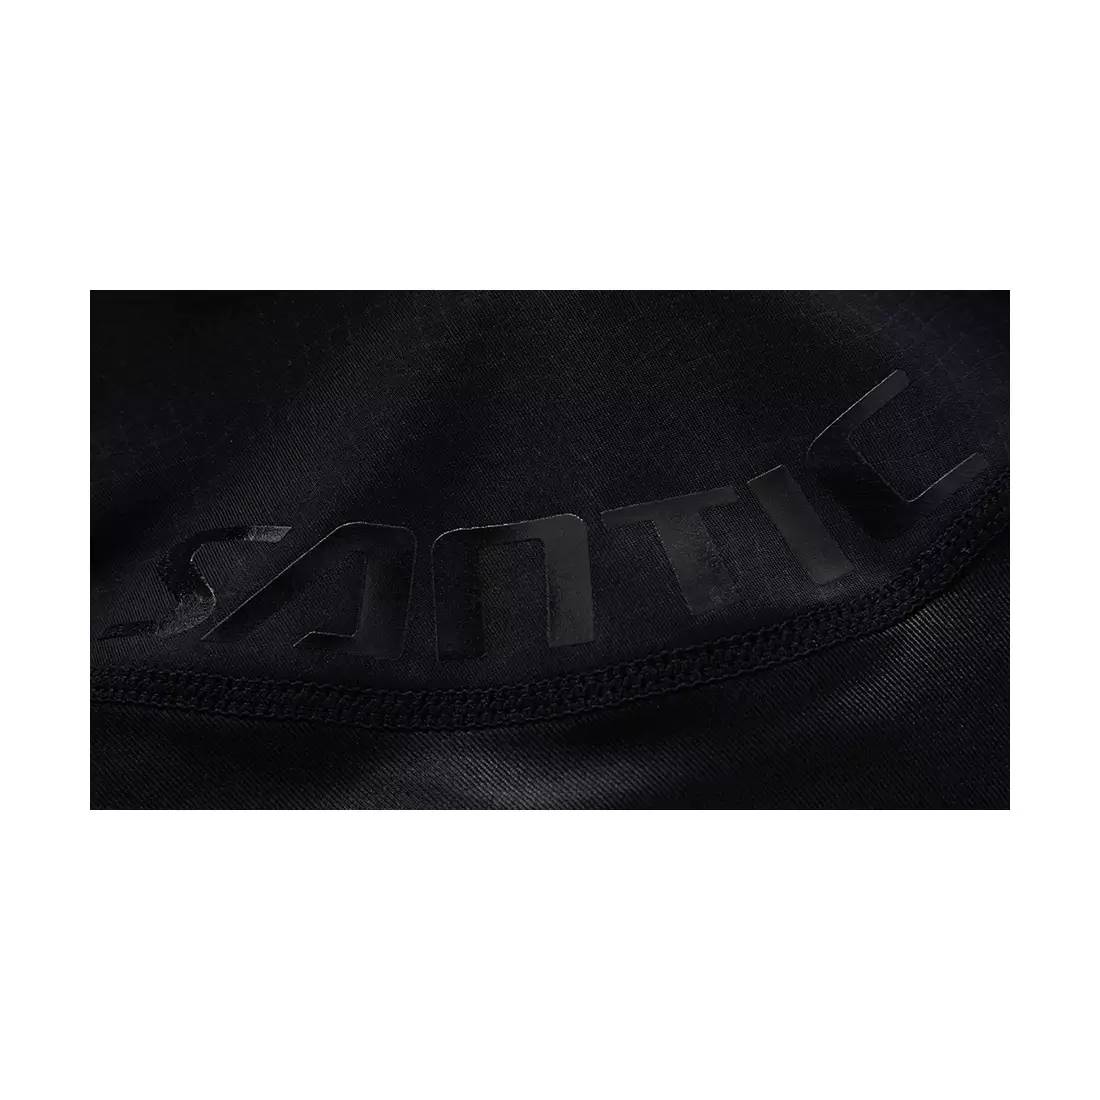 Náprsní šortky SANTIC T-Breathing, černé